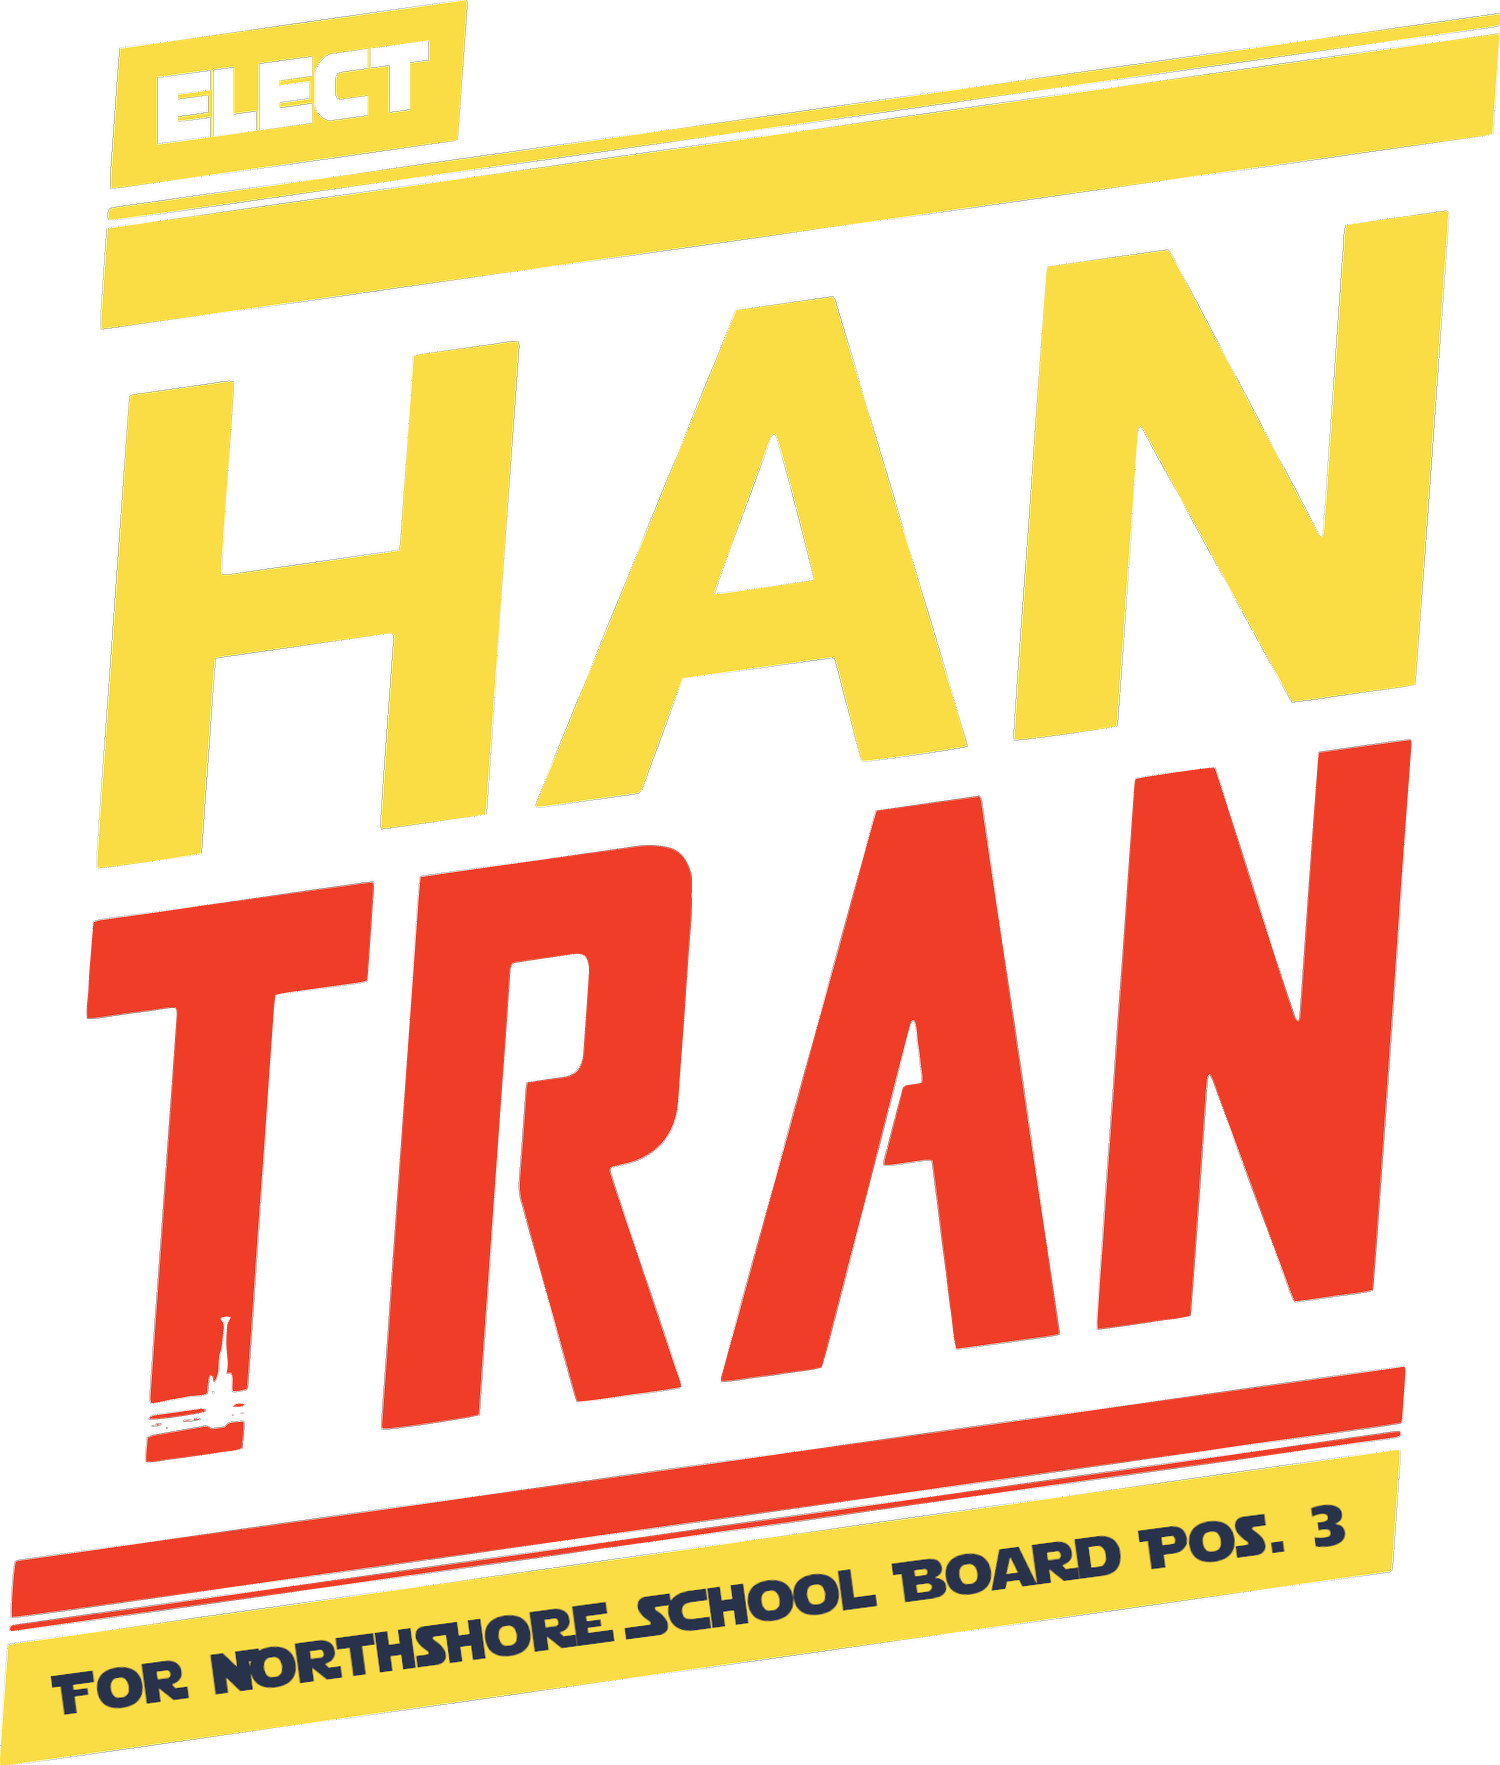 Han Tran for Northshore School Board 3